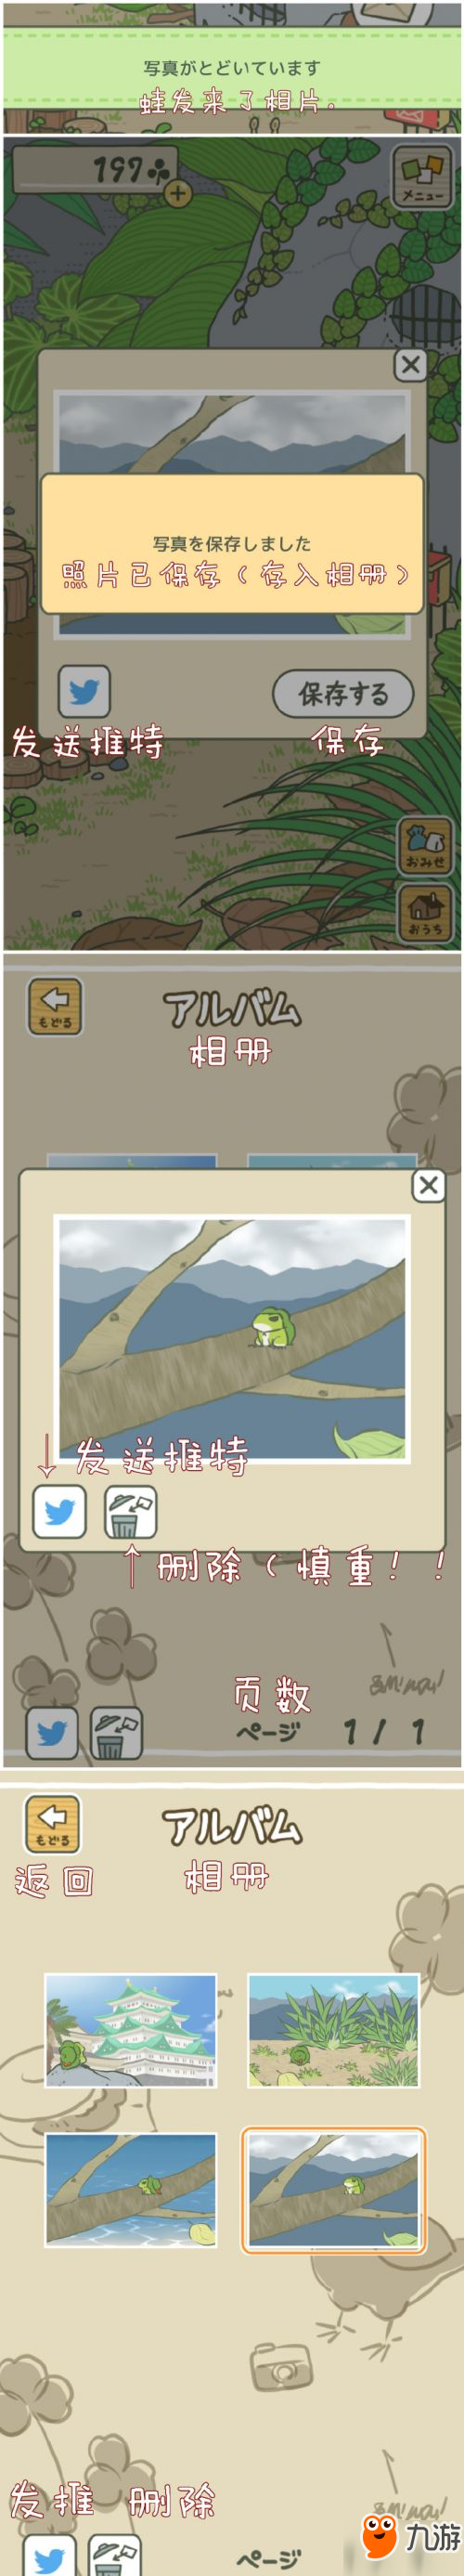 旅行青蛙怎么玩 养青蛙游戏中文汉化下载